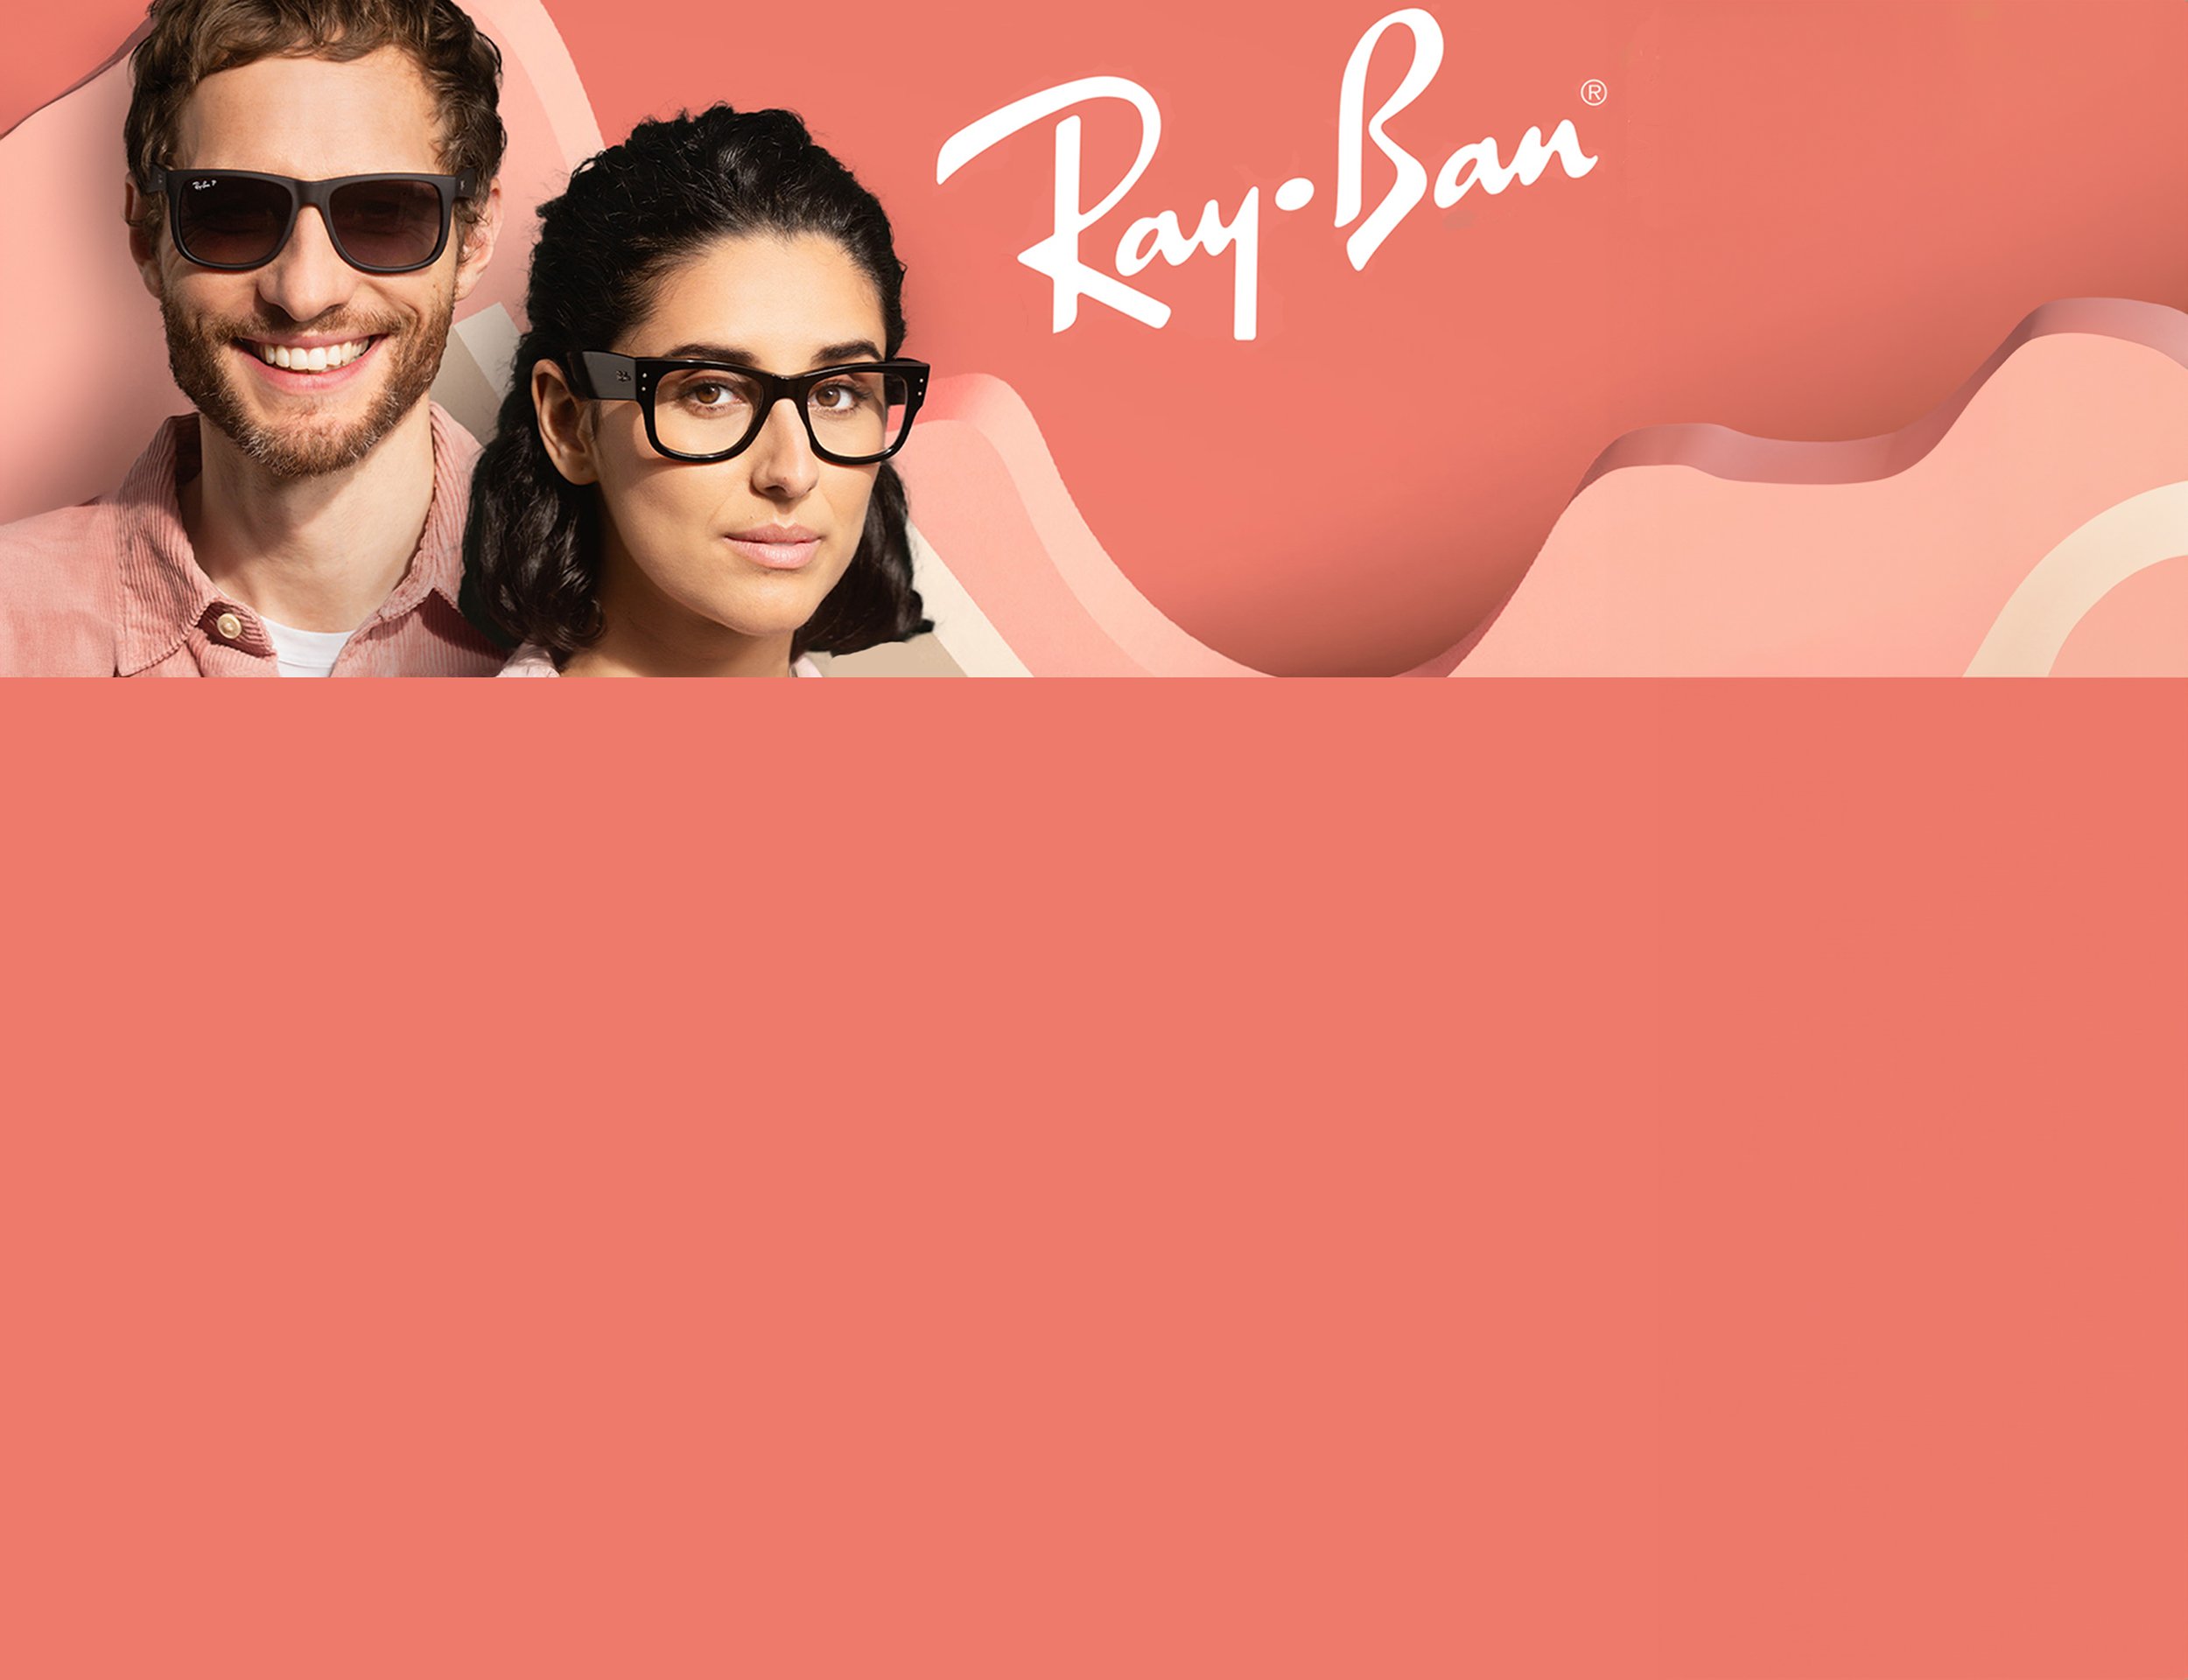 zu sehen sind ein Mann und eine Frau mit Ray-Ban-Logo vor einem lachsfarbenen Hintergrund